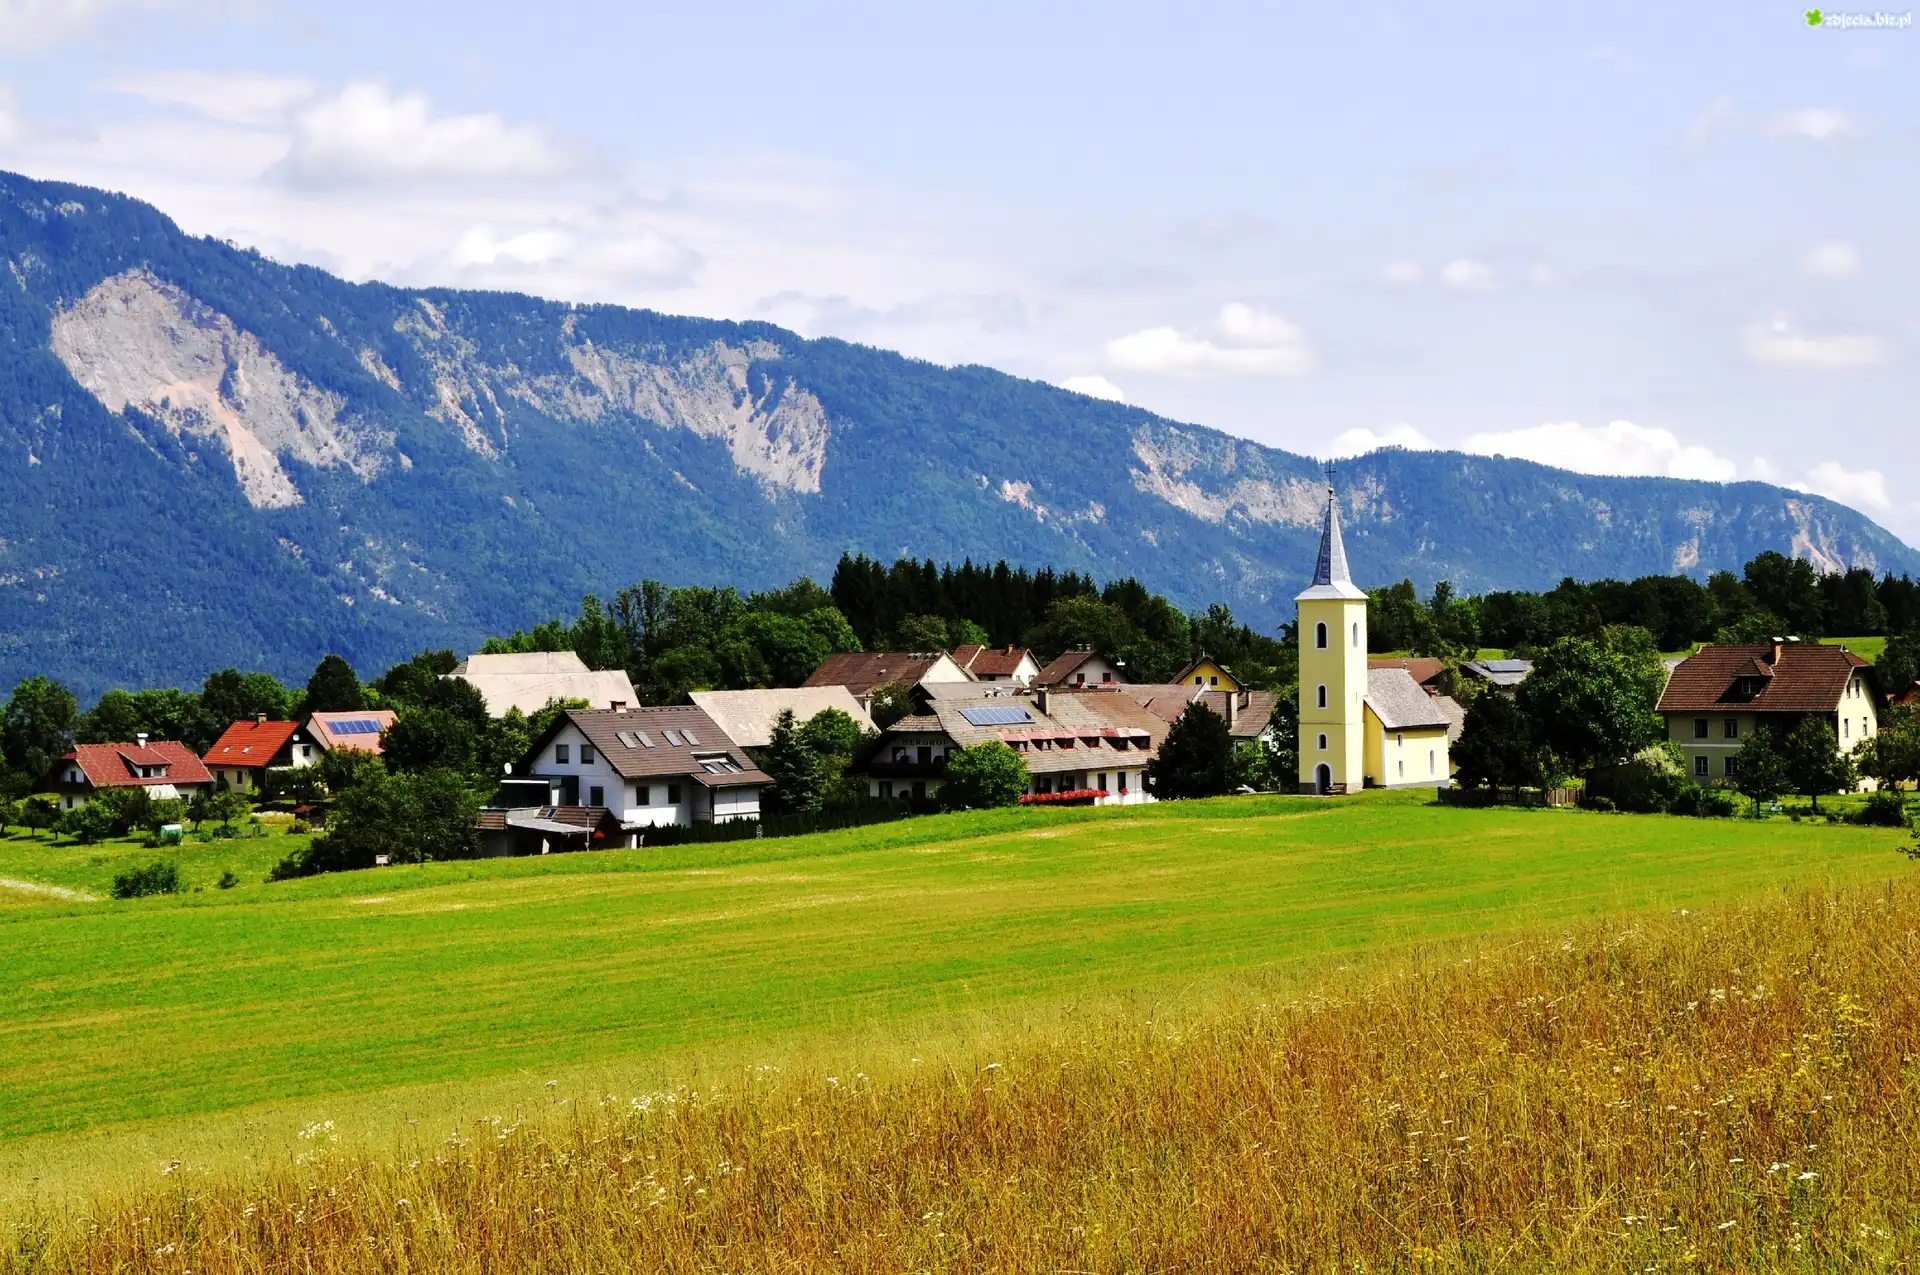 Miasteczko, Góry, Łąka, Austria